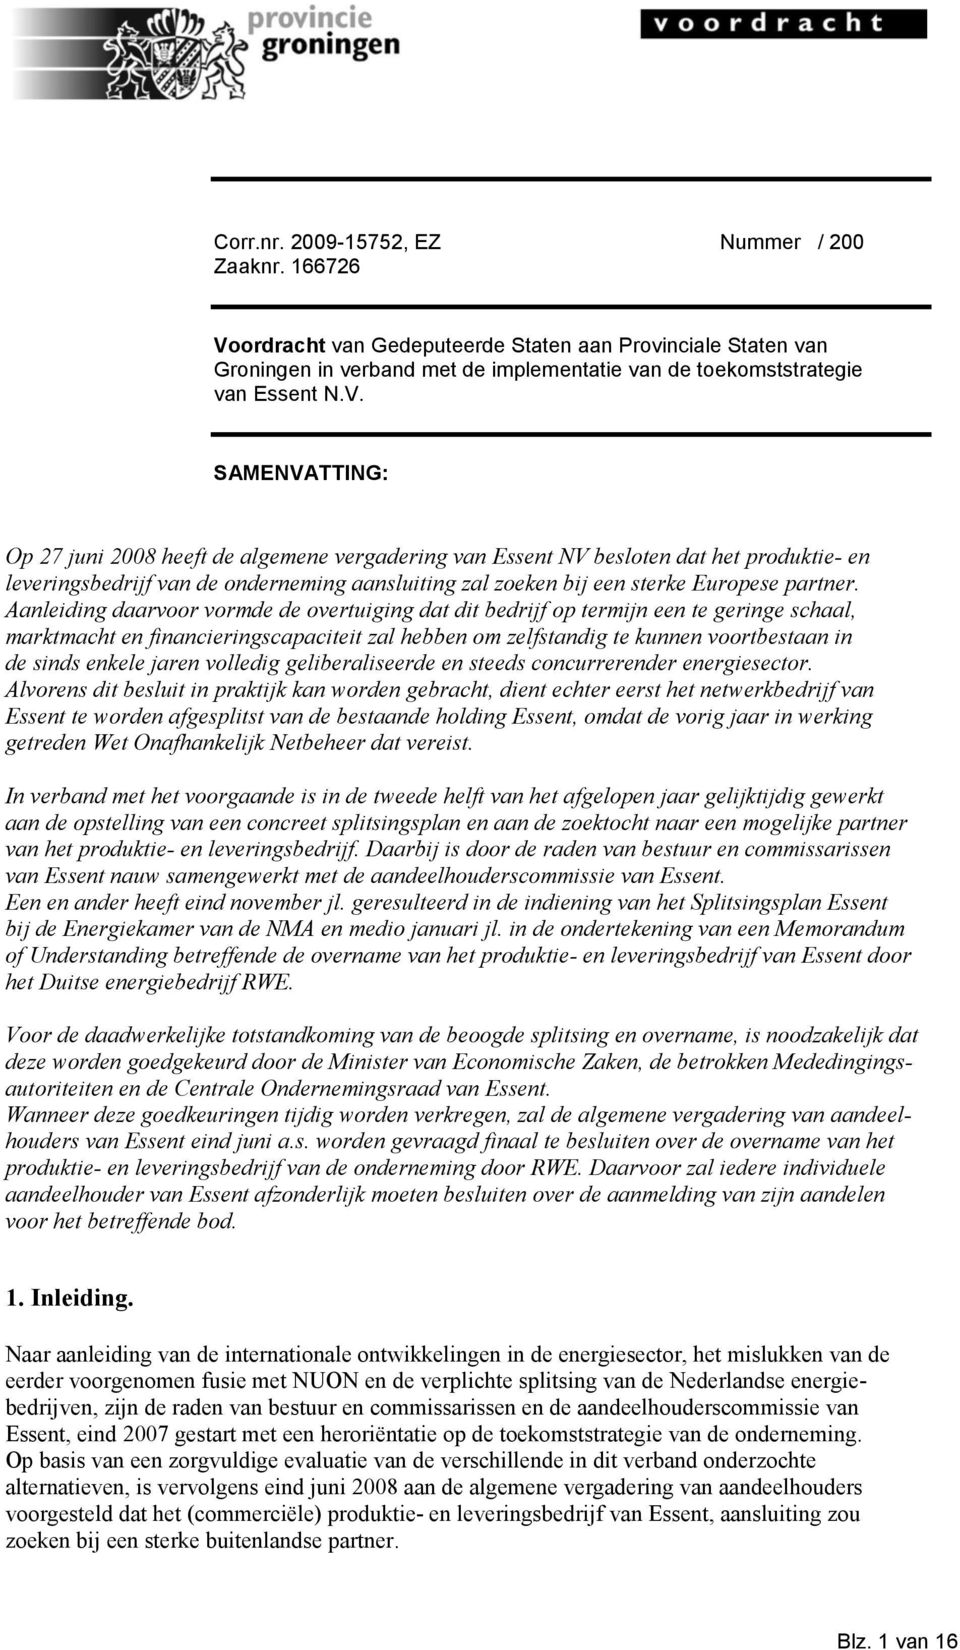 SAMENVATTING: Op 27 juni 2008 heeft de algemene vergadering van Essent NV besloten dat het produktie- en leveringsbedrijf van de onderneming aansluiting zal zoeken bij een sterke Europese partner.